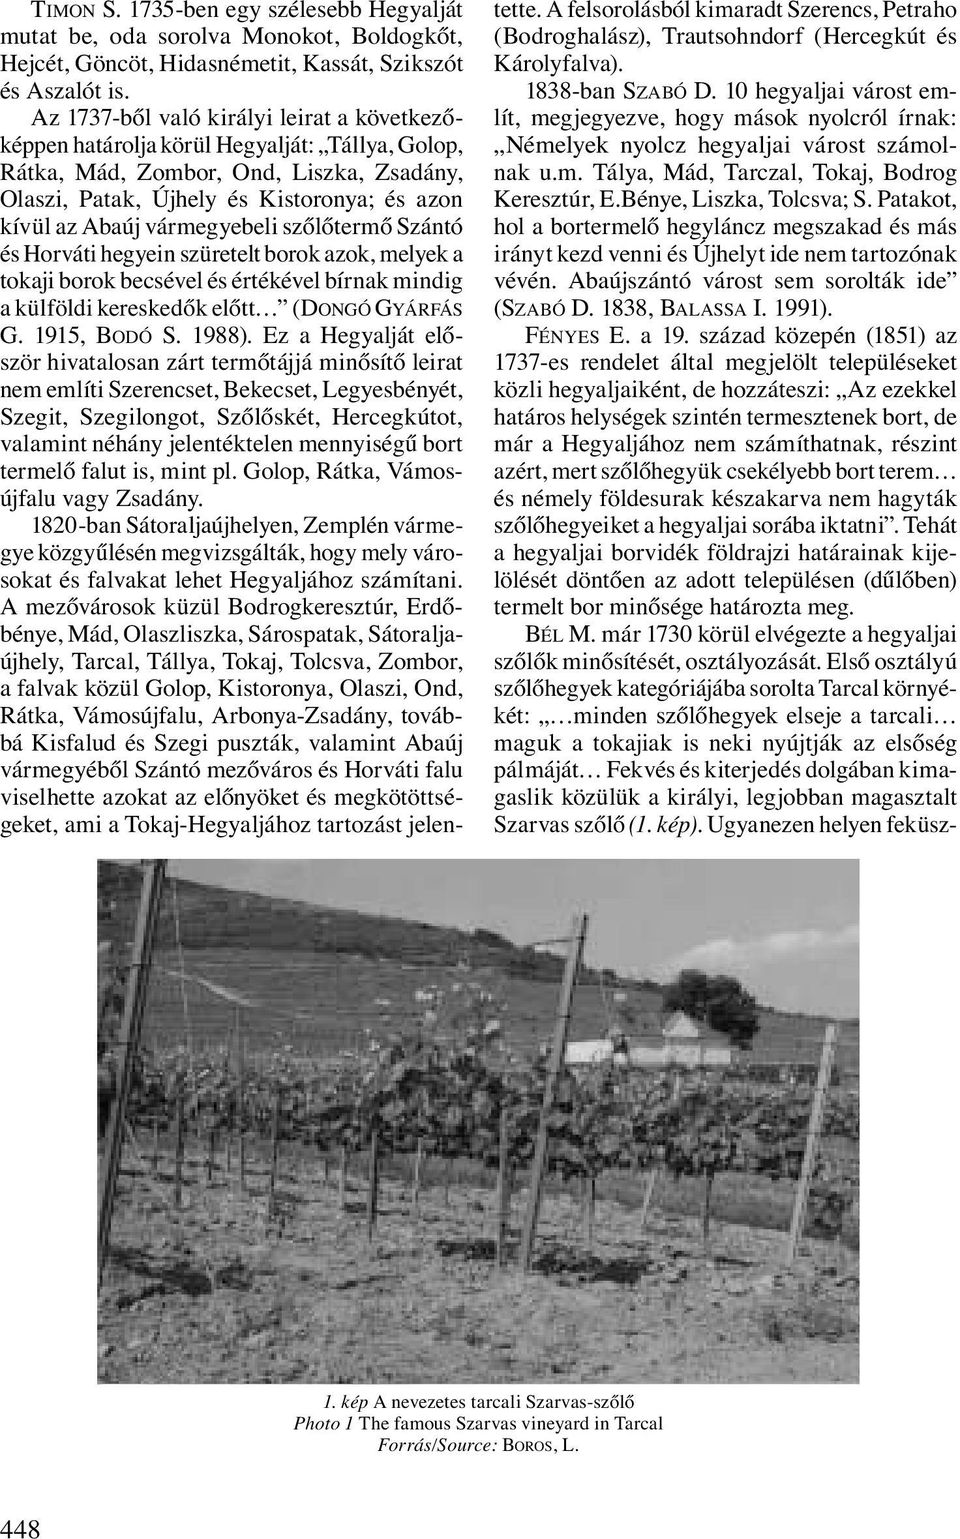 vármegyebeli szőlőtermő Szántó és Horváti hegyein szüretelt borok azok, melyek a tokaji borok becsével és értékével bírnak mindig a külföldi kereskedők előtt (DONGÓ GYÁRFÁS G. 1915, BODÓ S. 1988).